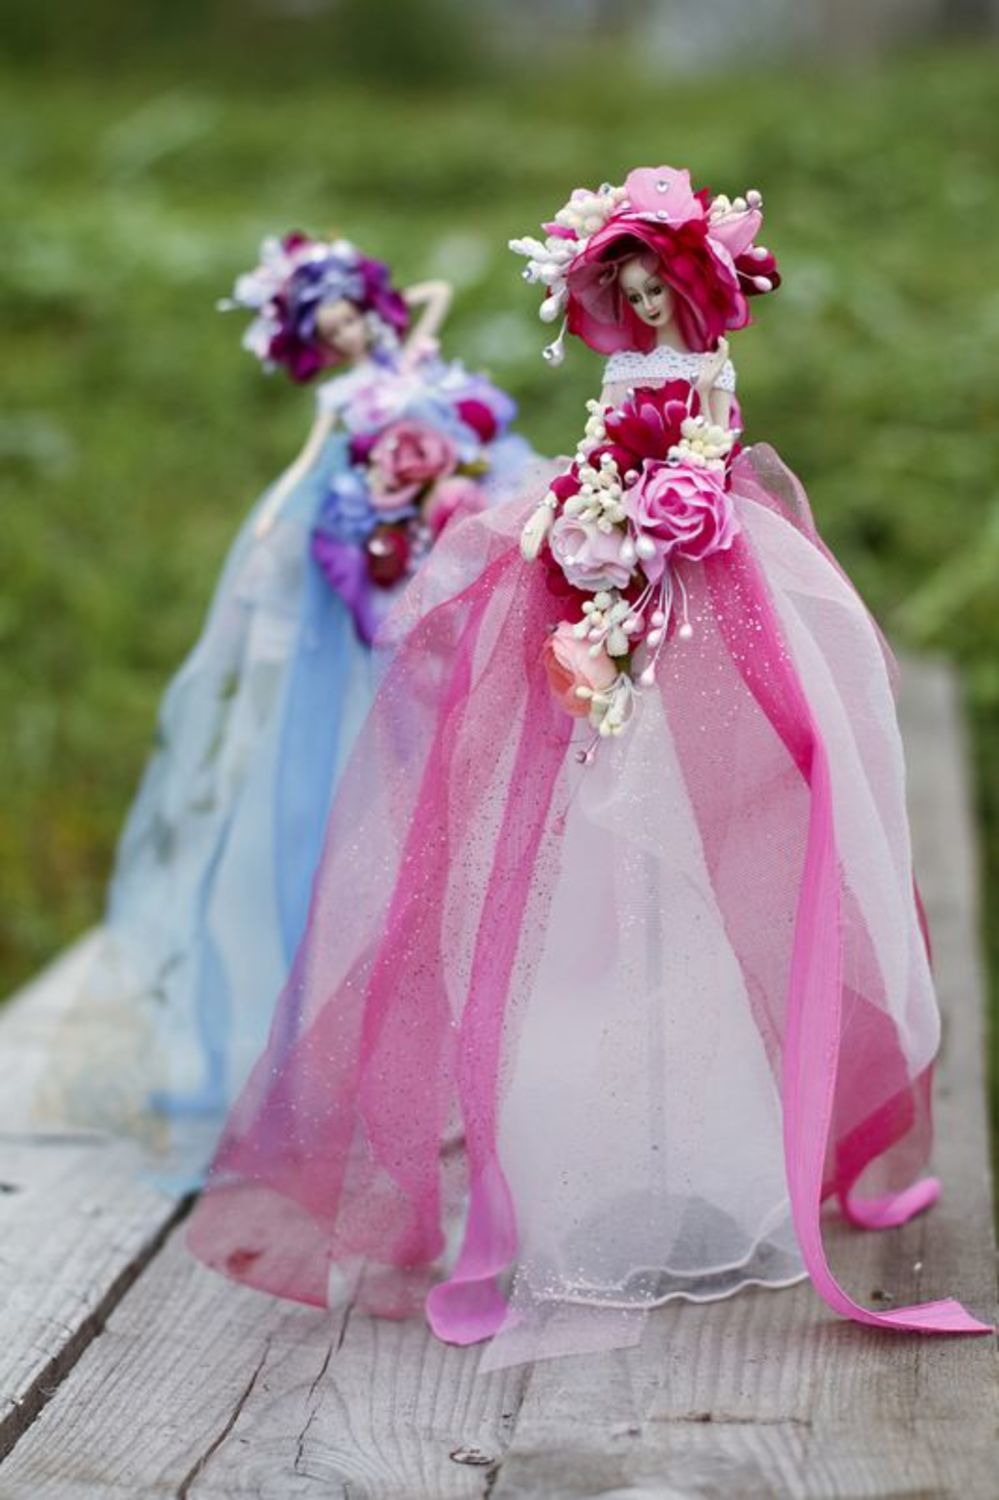 Bambola in vestito roseo pupazzo decorativo accessori per nozze decorative foto 1